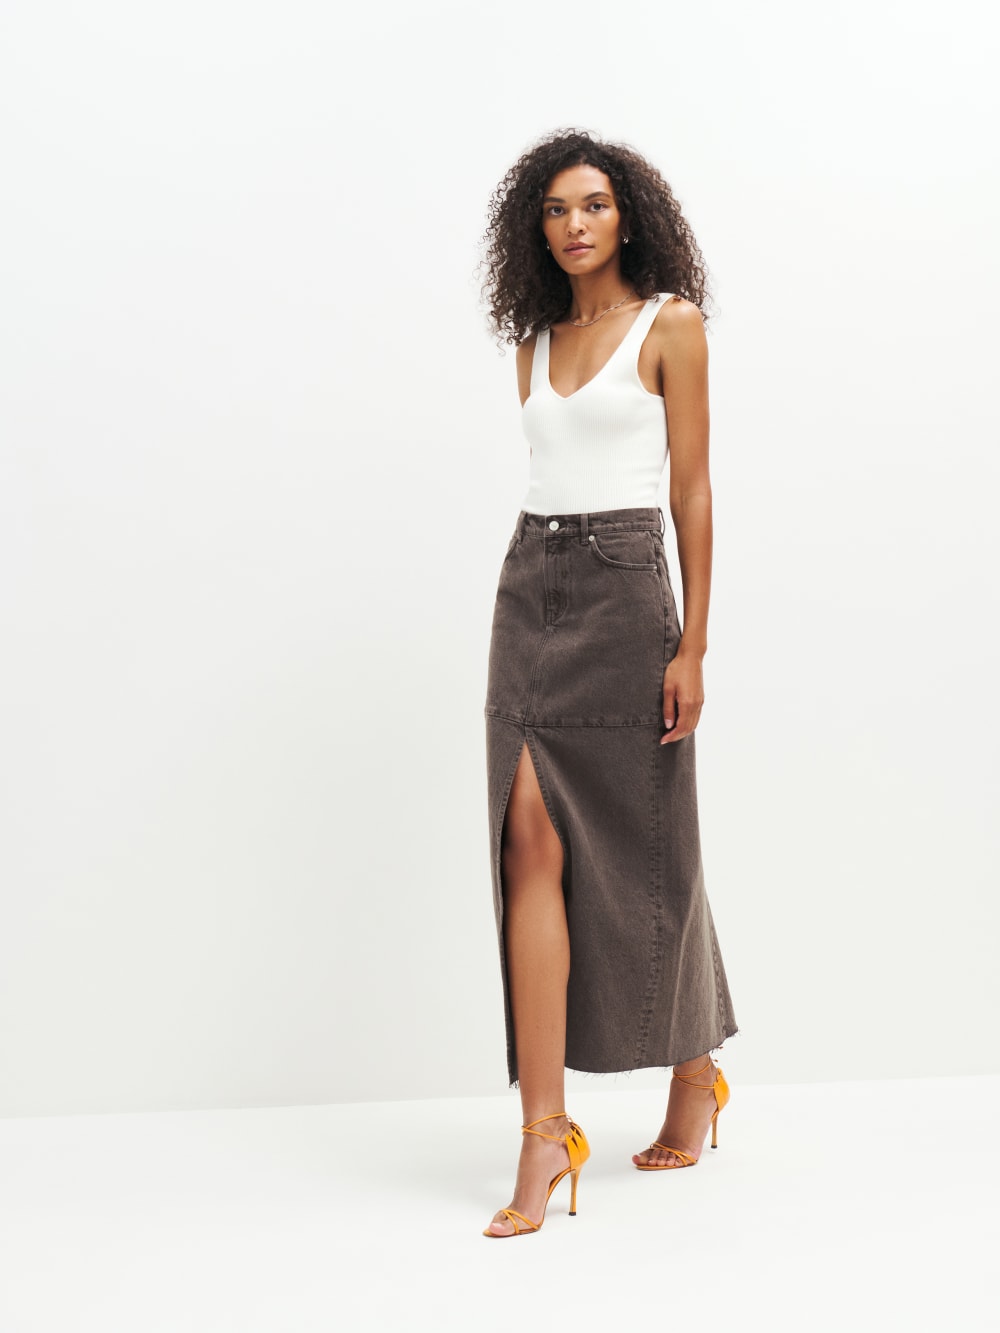 gray wool skirt, a line skirt, classic skirt, elegant skirt, skirt